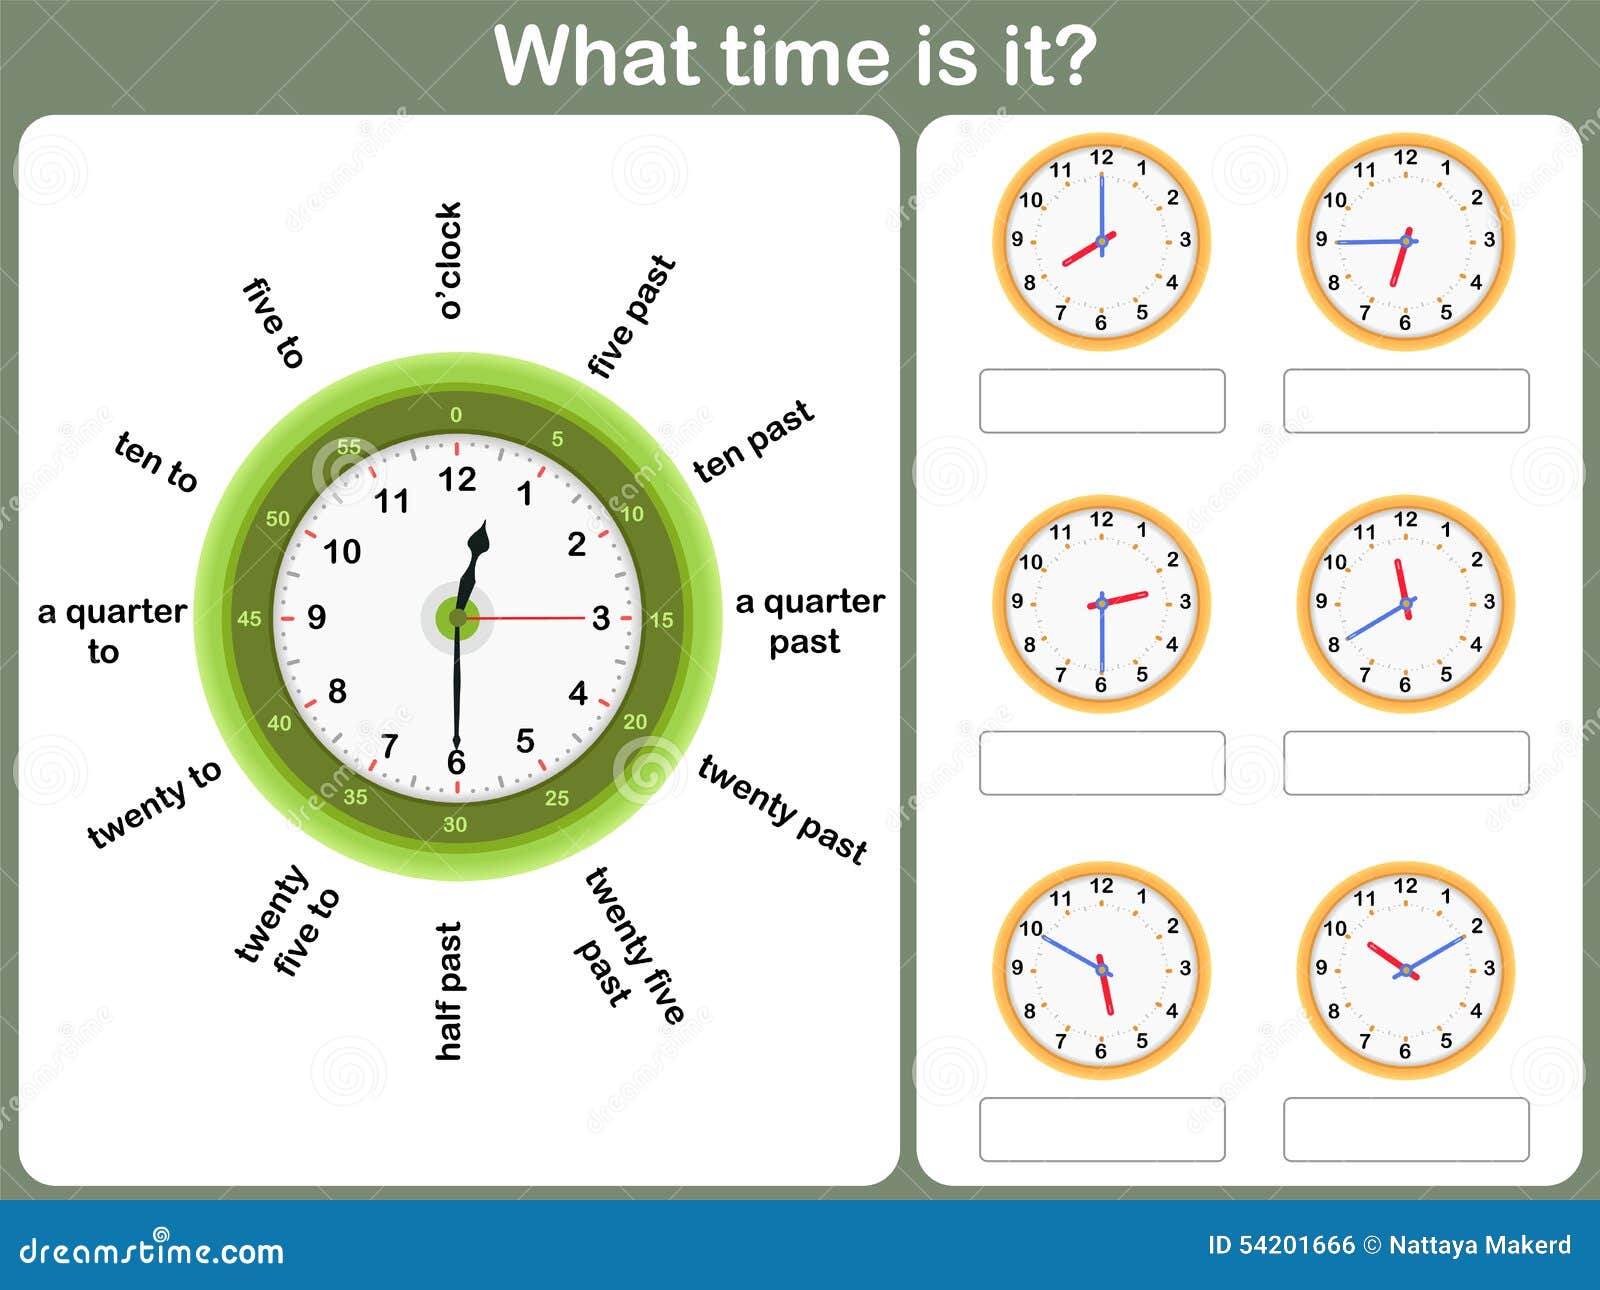 Час 15 минут на английском. Часы на английском. Часы для отработки времени. Упражнения на отработку времени по часам. Задания для изучения времени по часам по английскому.